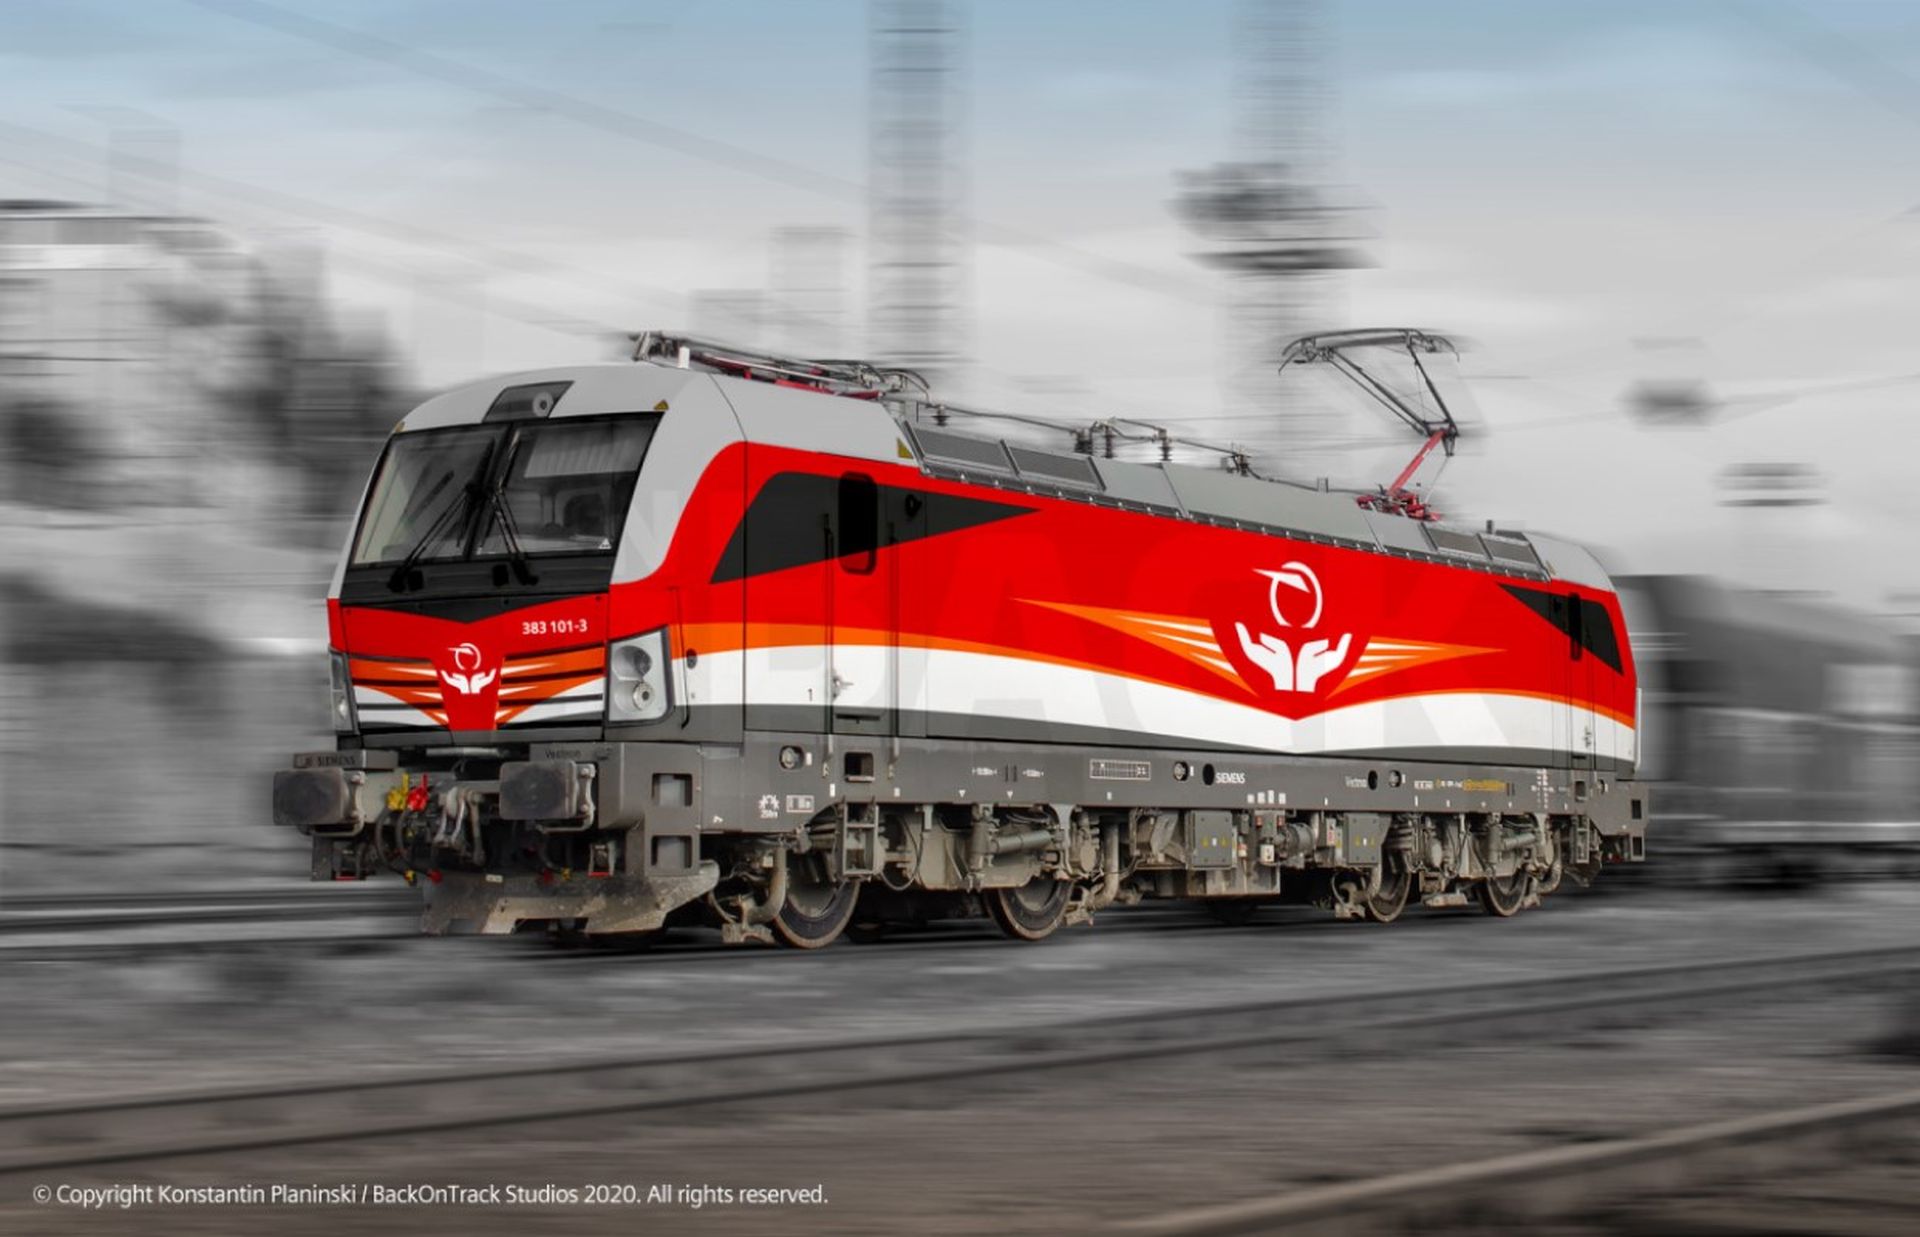 Vítězný návrh polepu lokomotivy Siemens Vectron. Foto: Konstantin Planinski